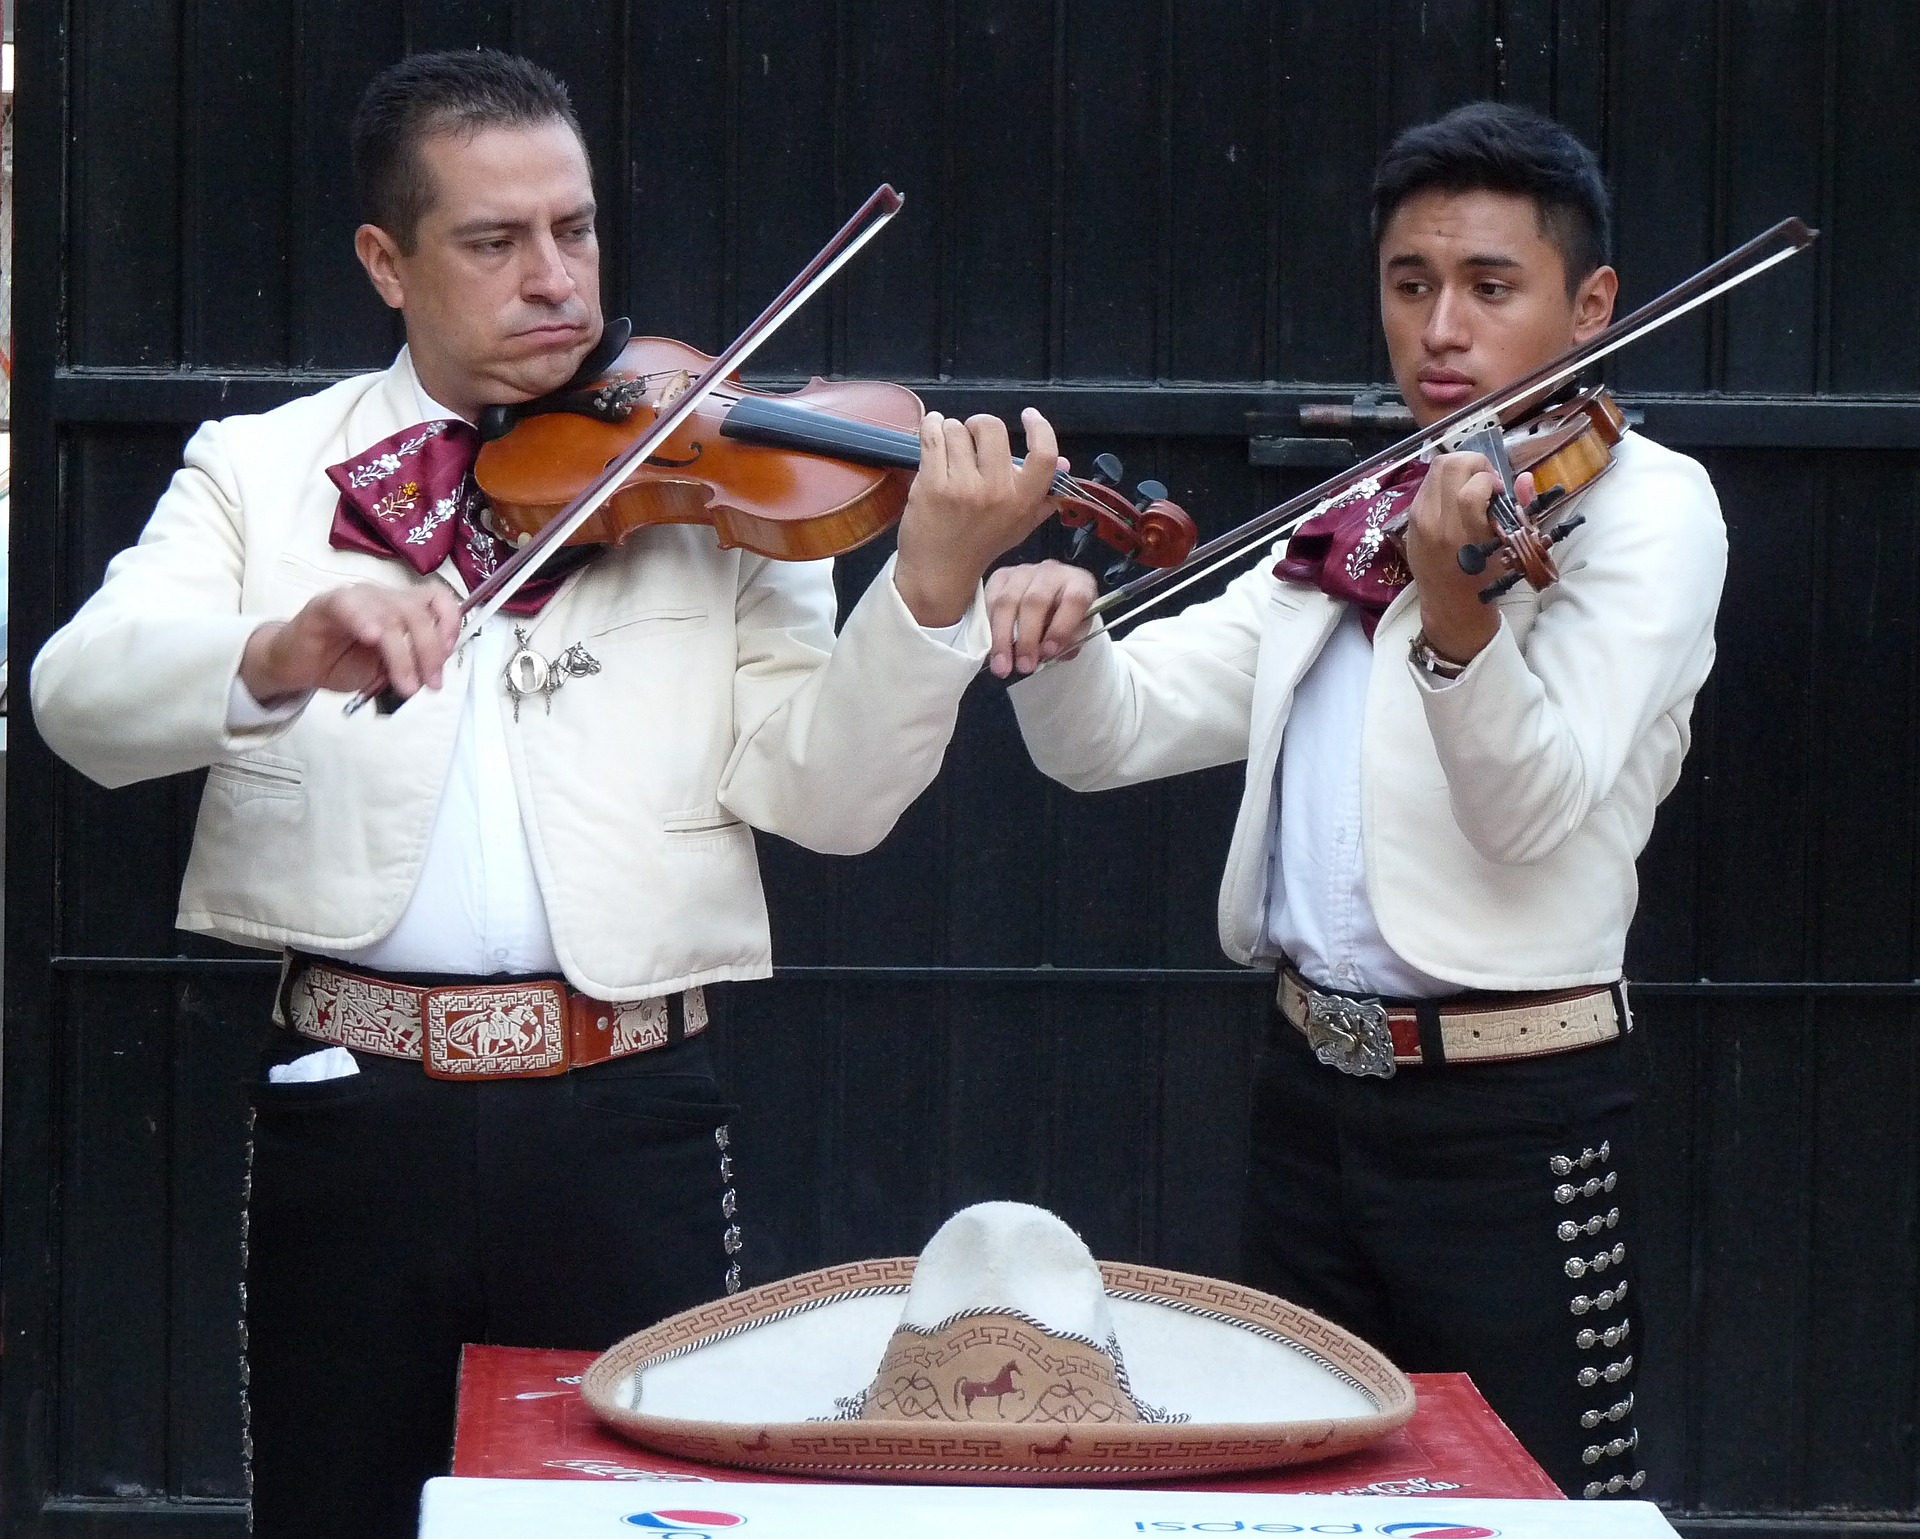 Macou, J. (2014). Mariachis [fotografía]. Dos mariachis con violines.